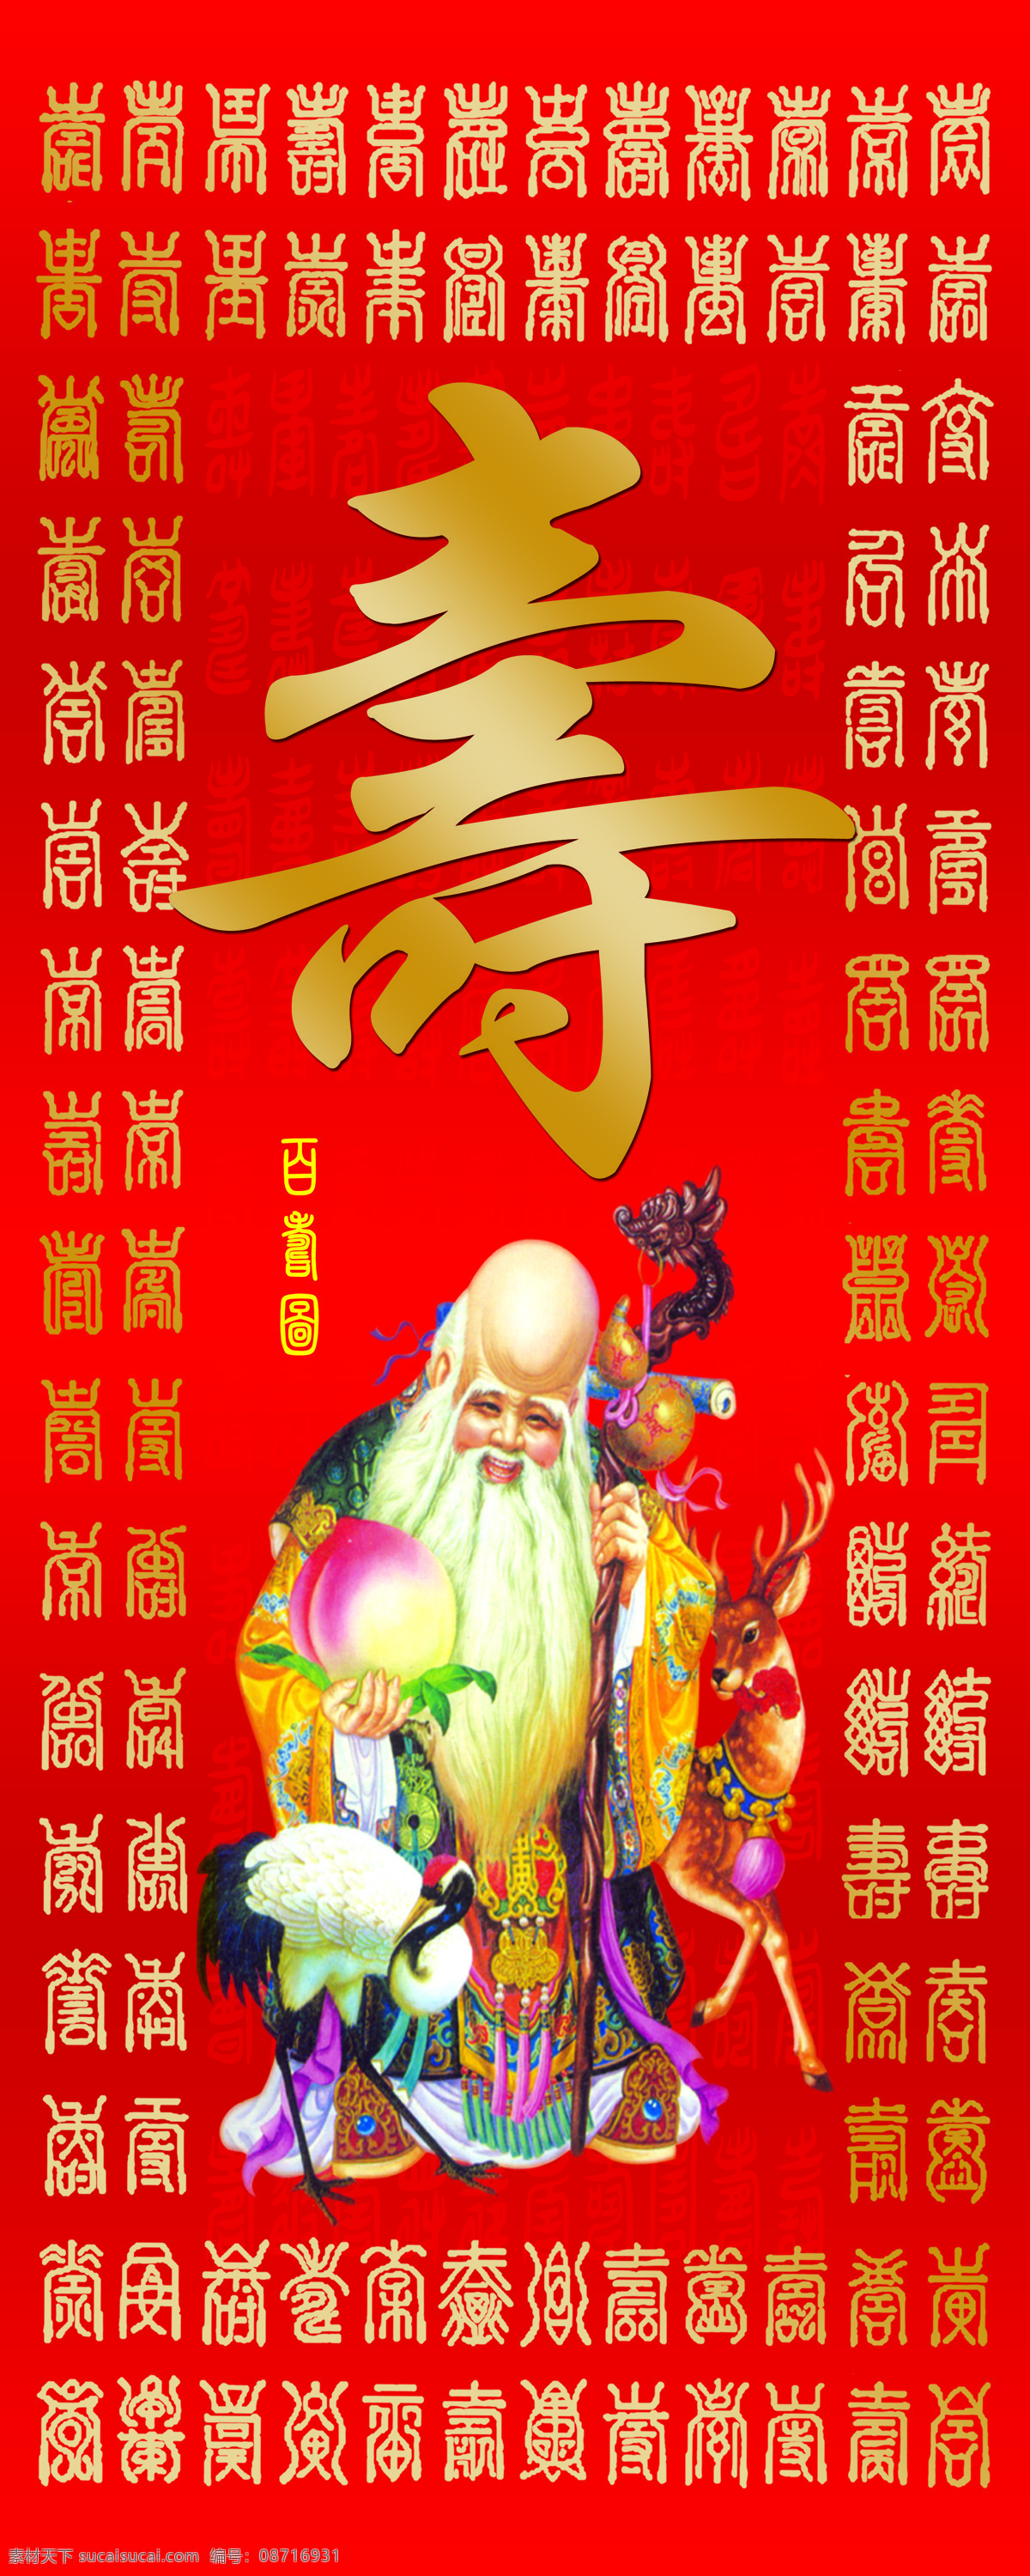 寿字 寿老 寿桃红色背景 寿桃 红色 背景 寿 字 展架 传统文化 文化艺术